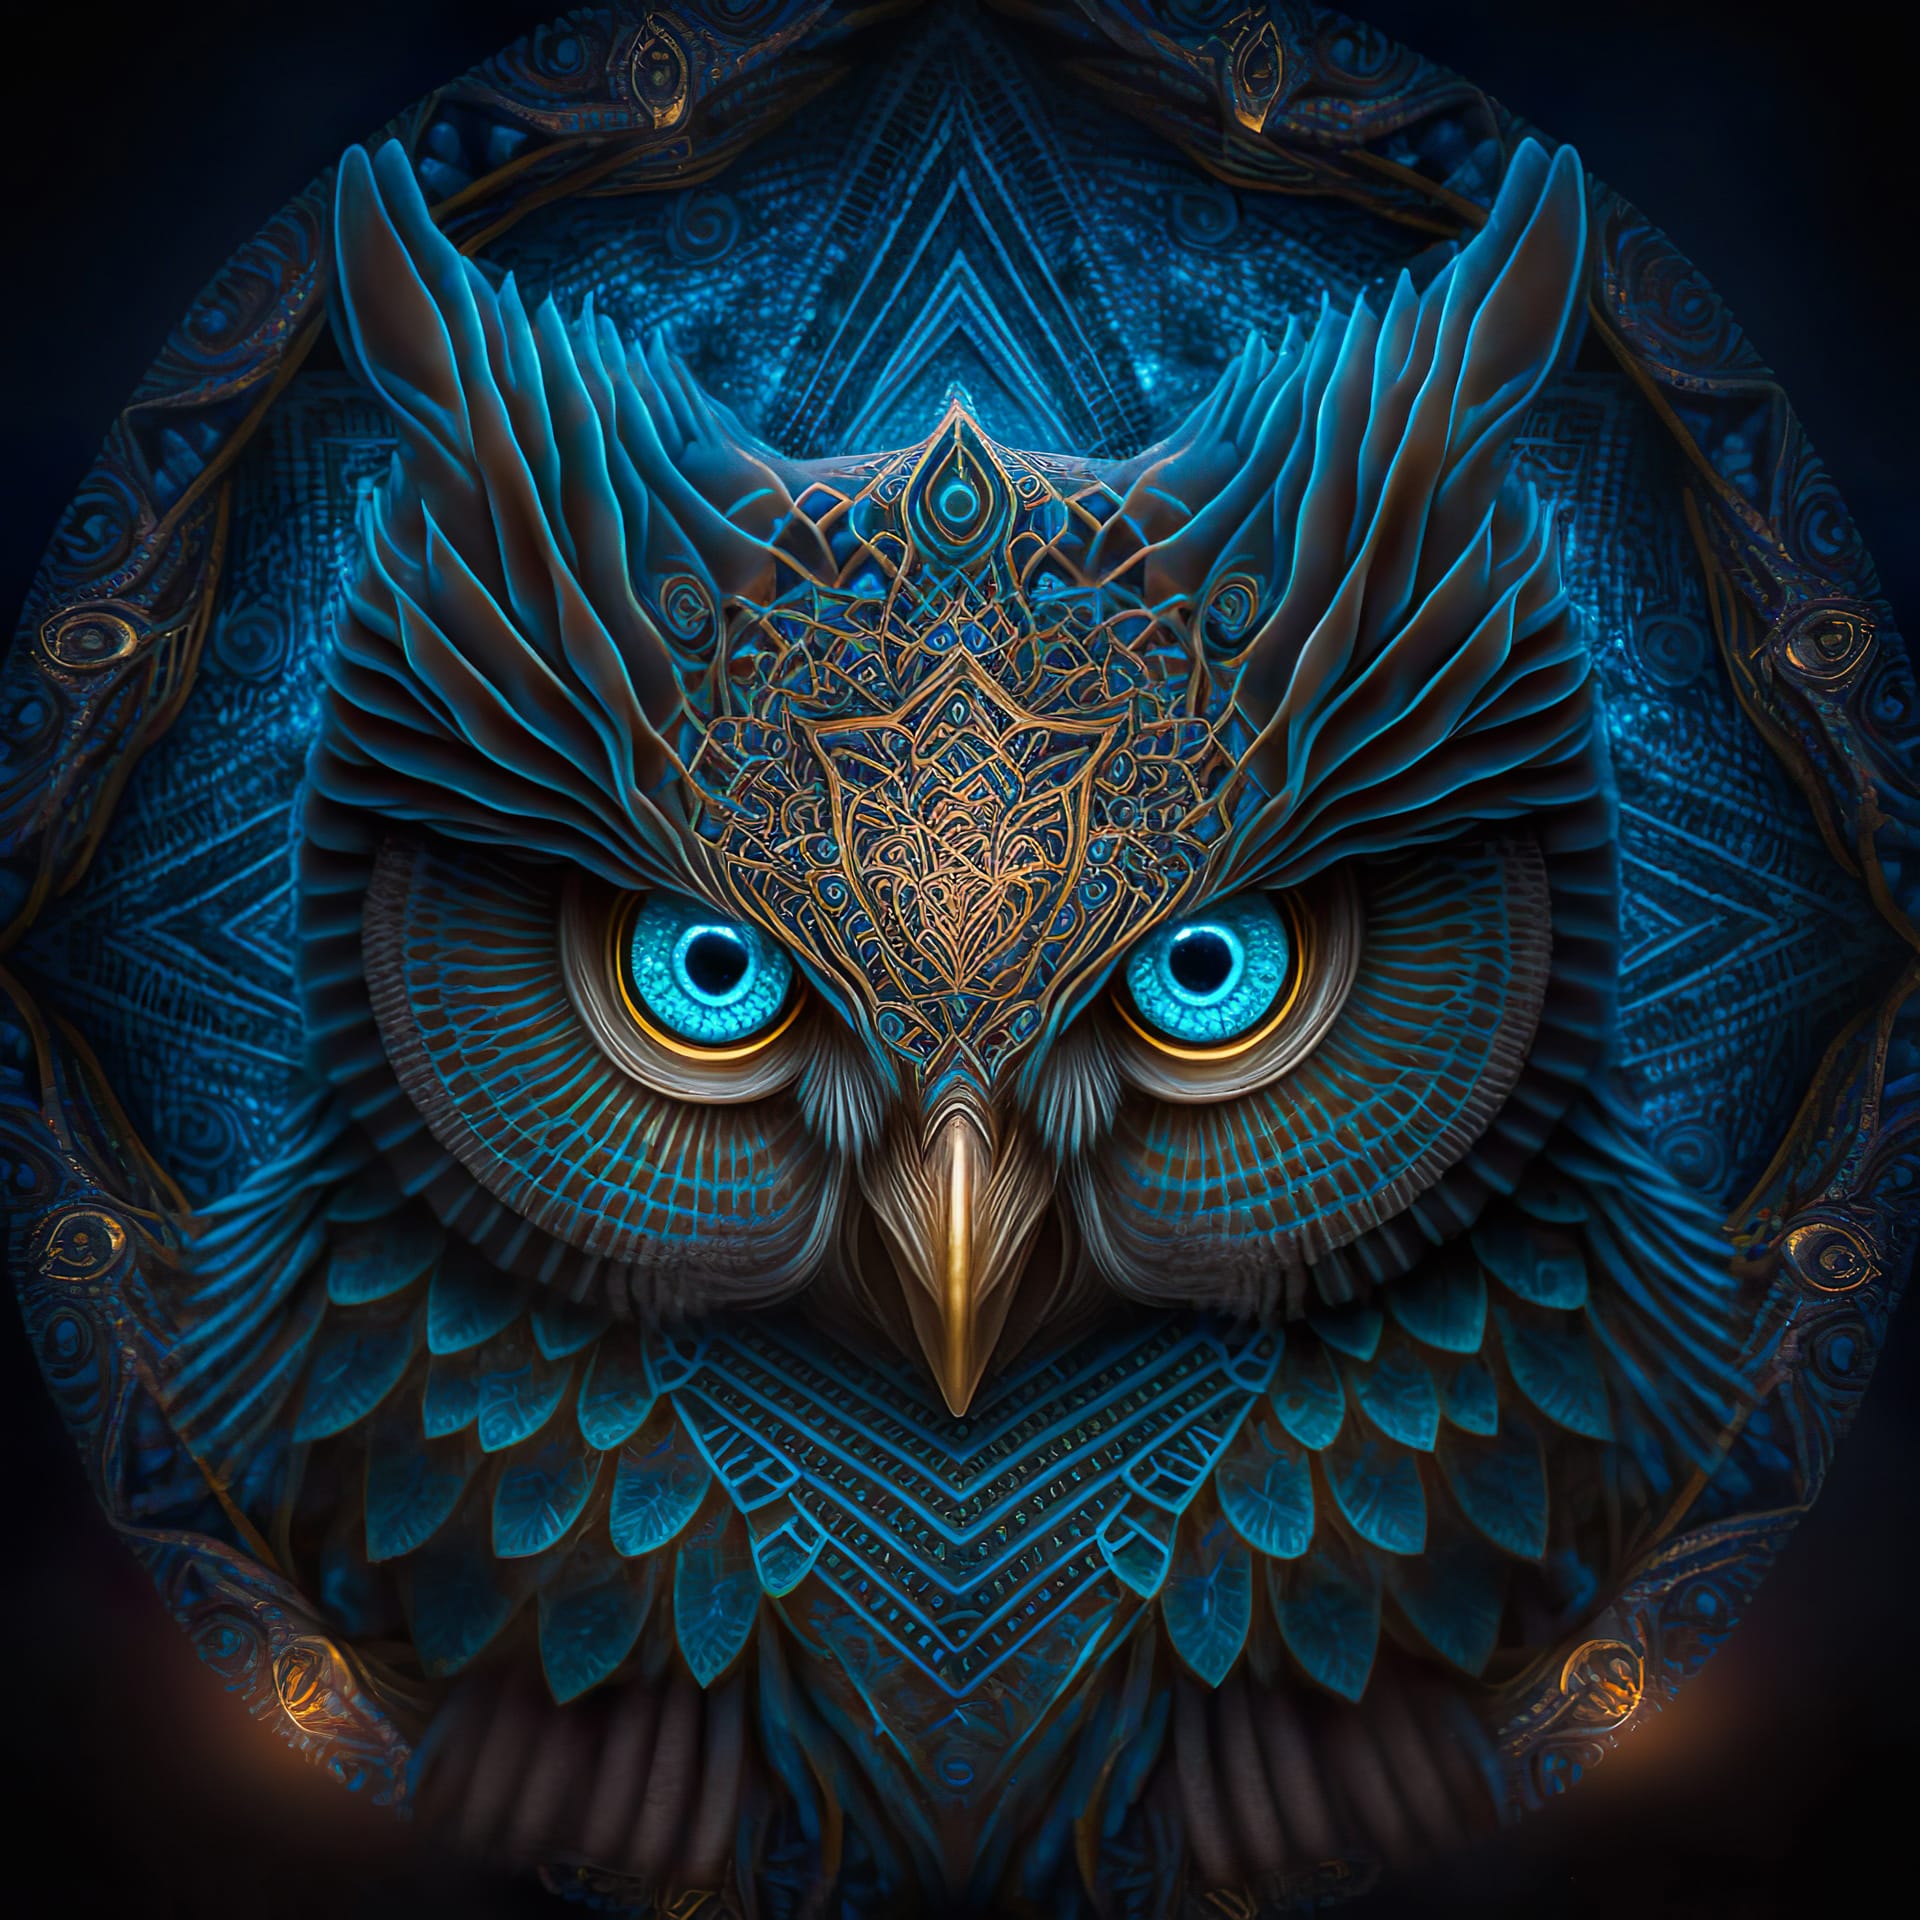 Totemic mascot blue owl ethnic illustration boho style